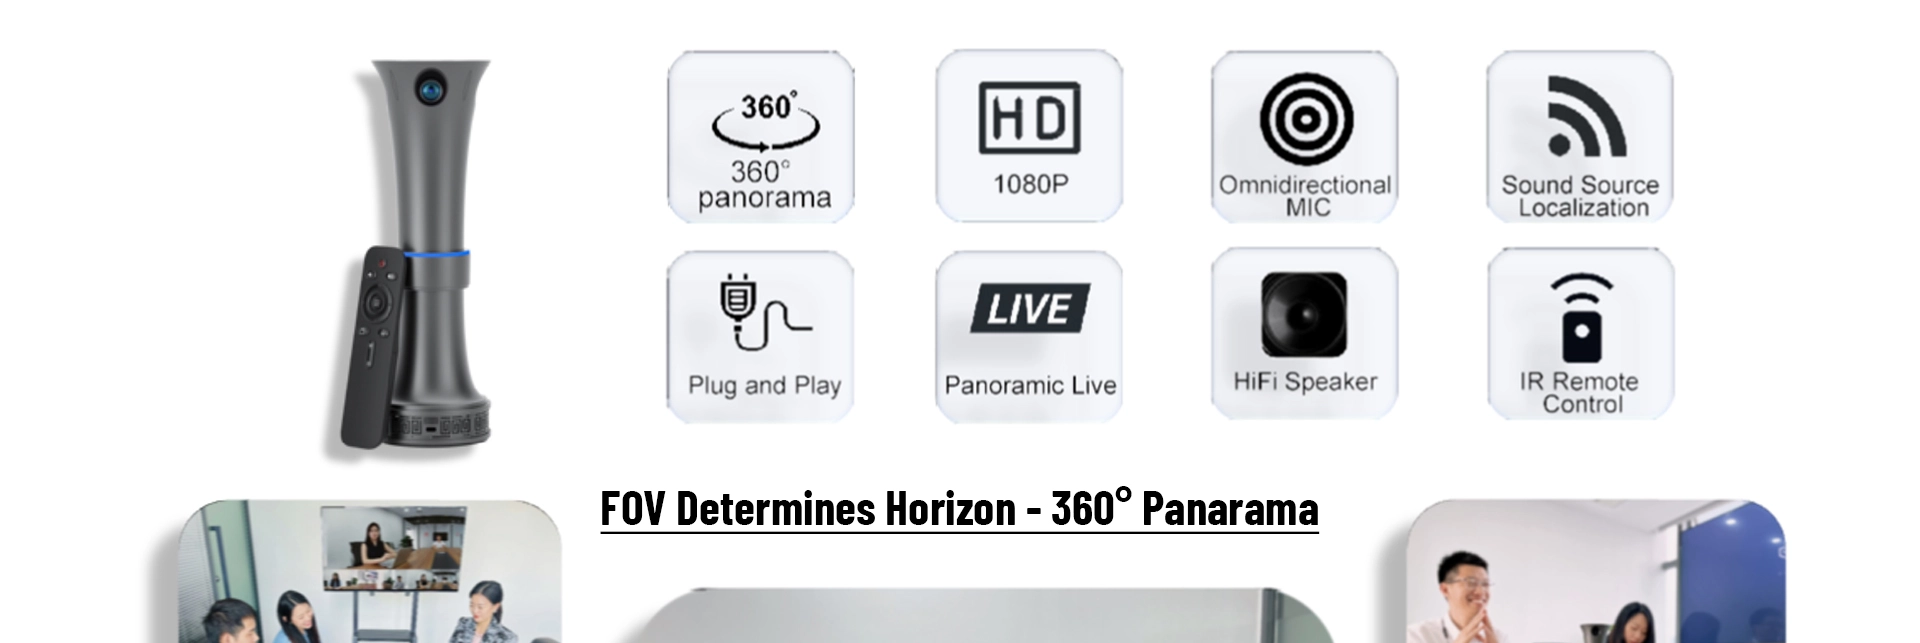 Панорамная камера для видеоконференции на 360 градусов с громкой связью